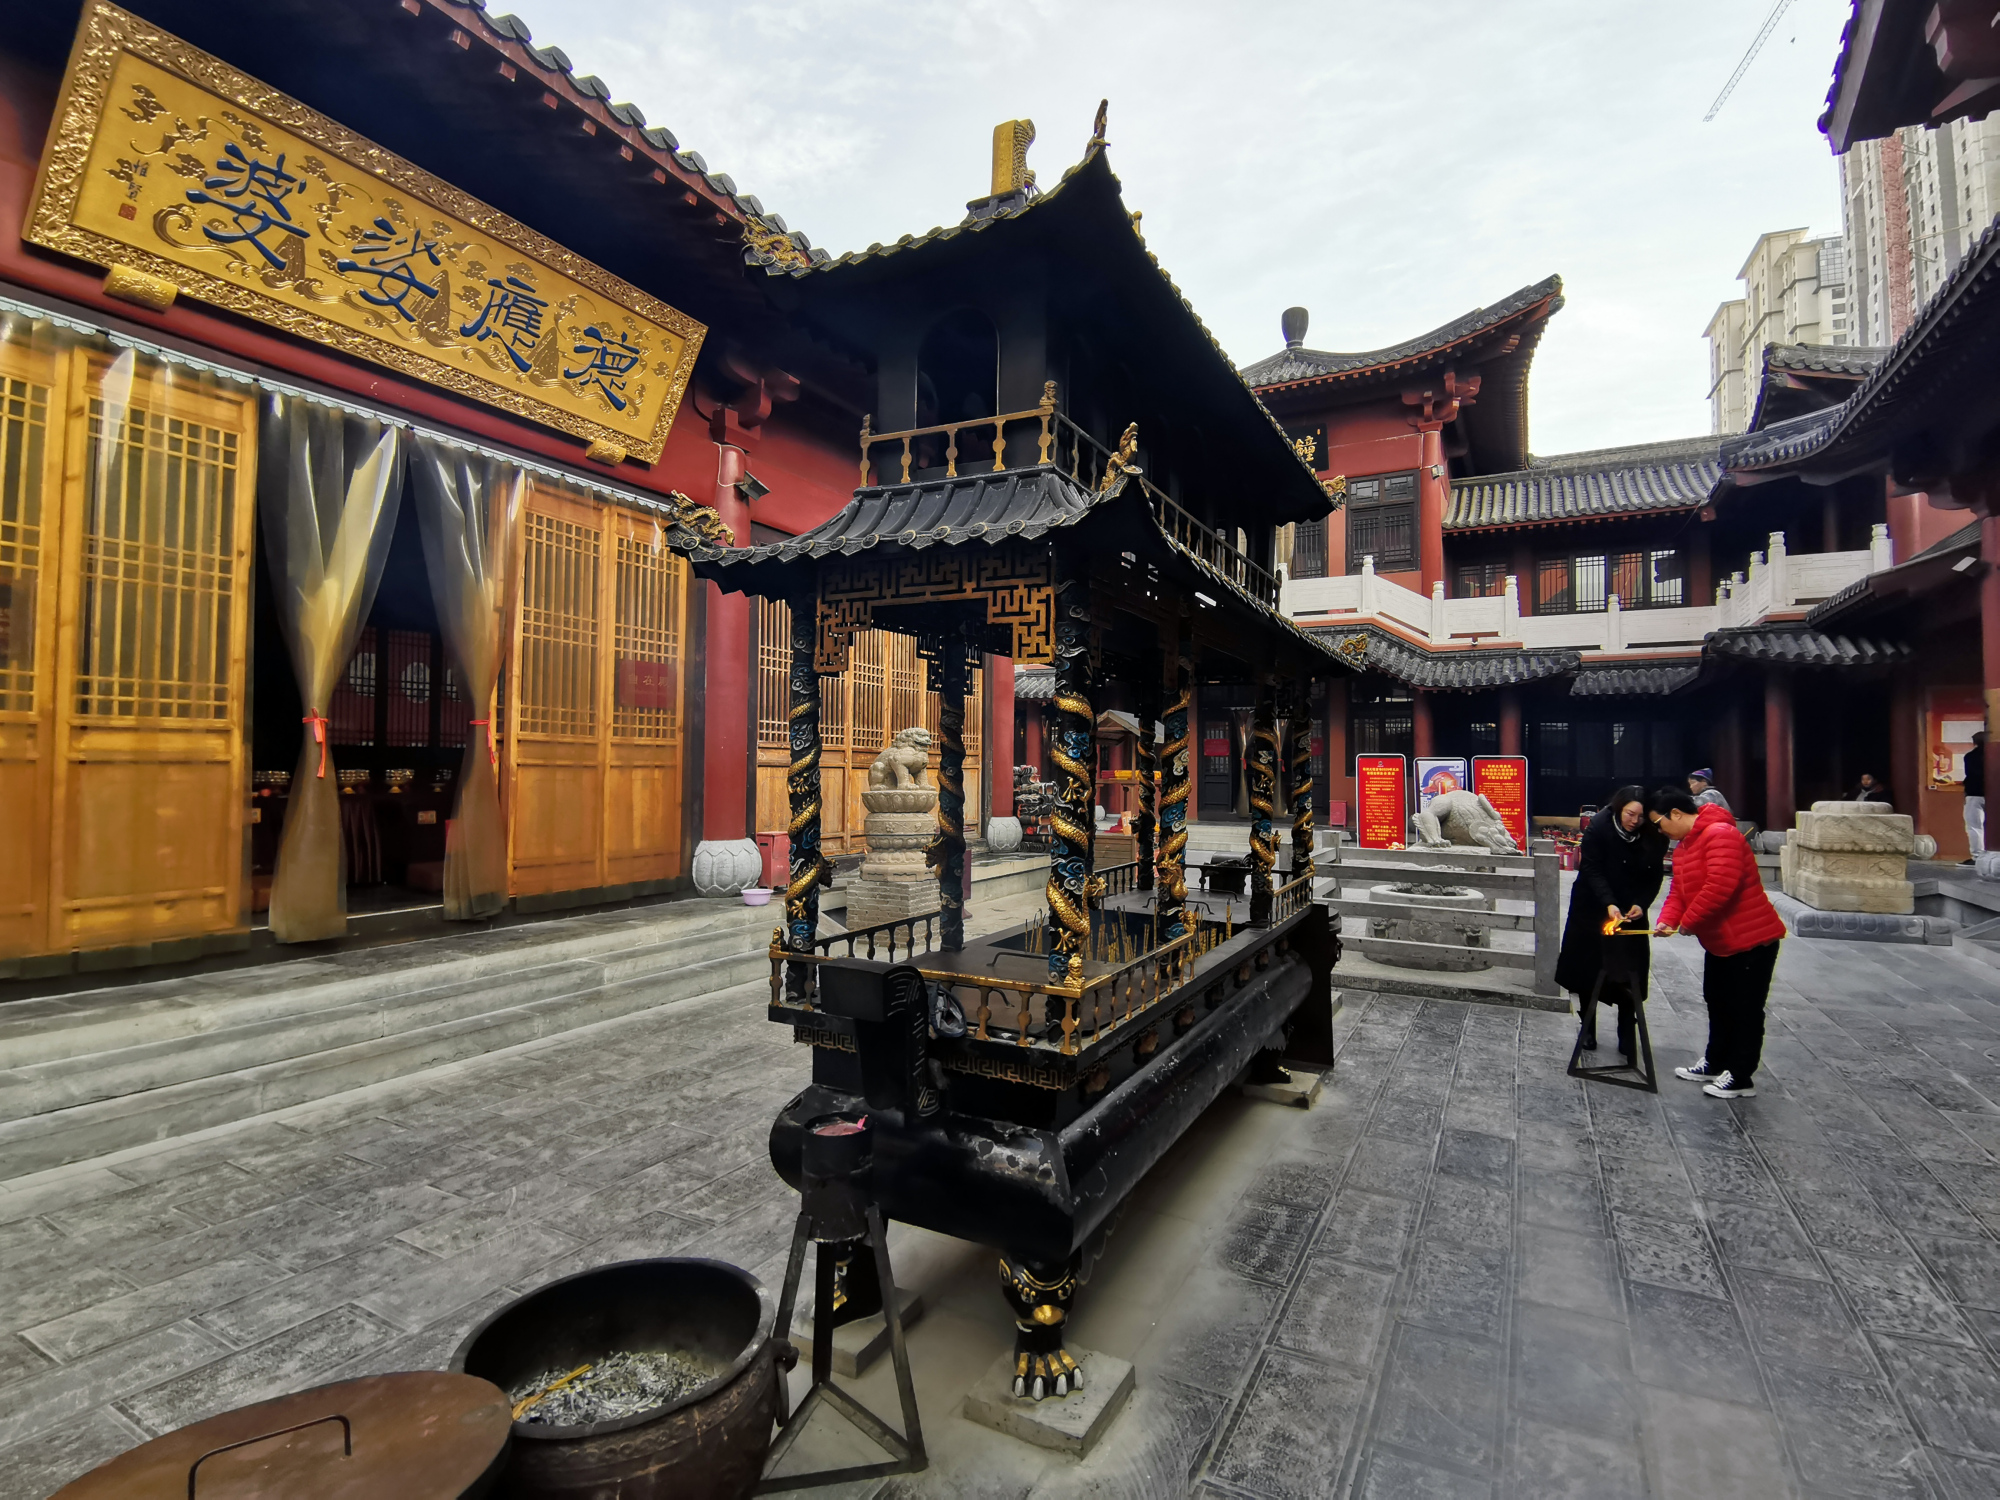 原创敢信?郑州市区藏座免费寺庙,建有中国室内最大观音像